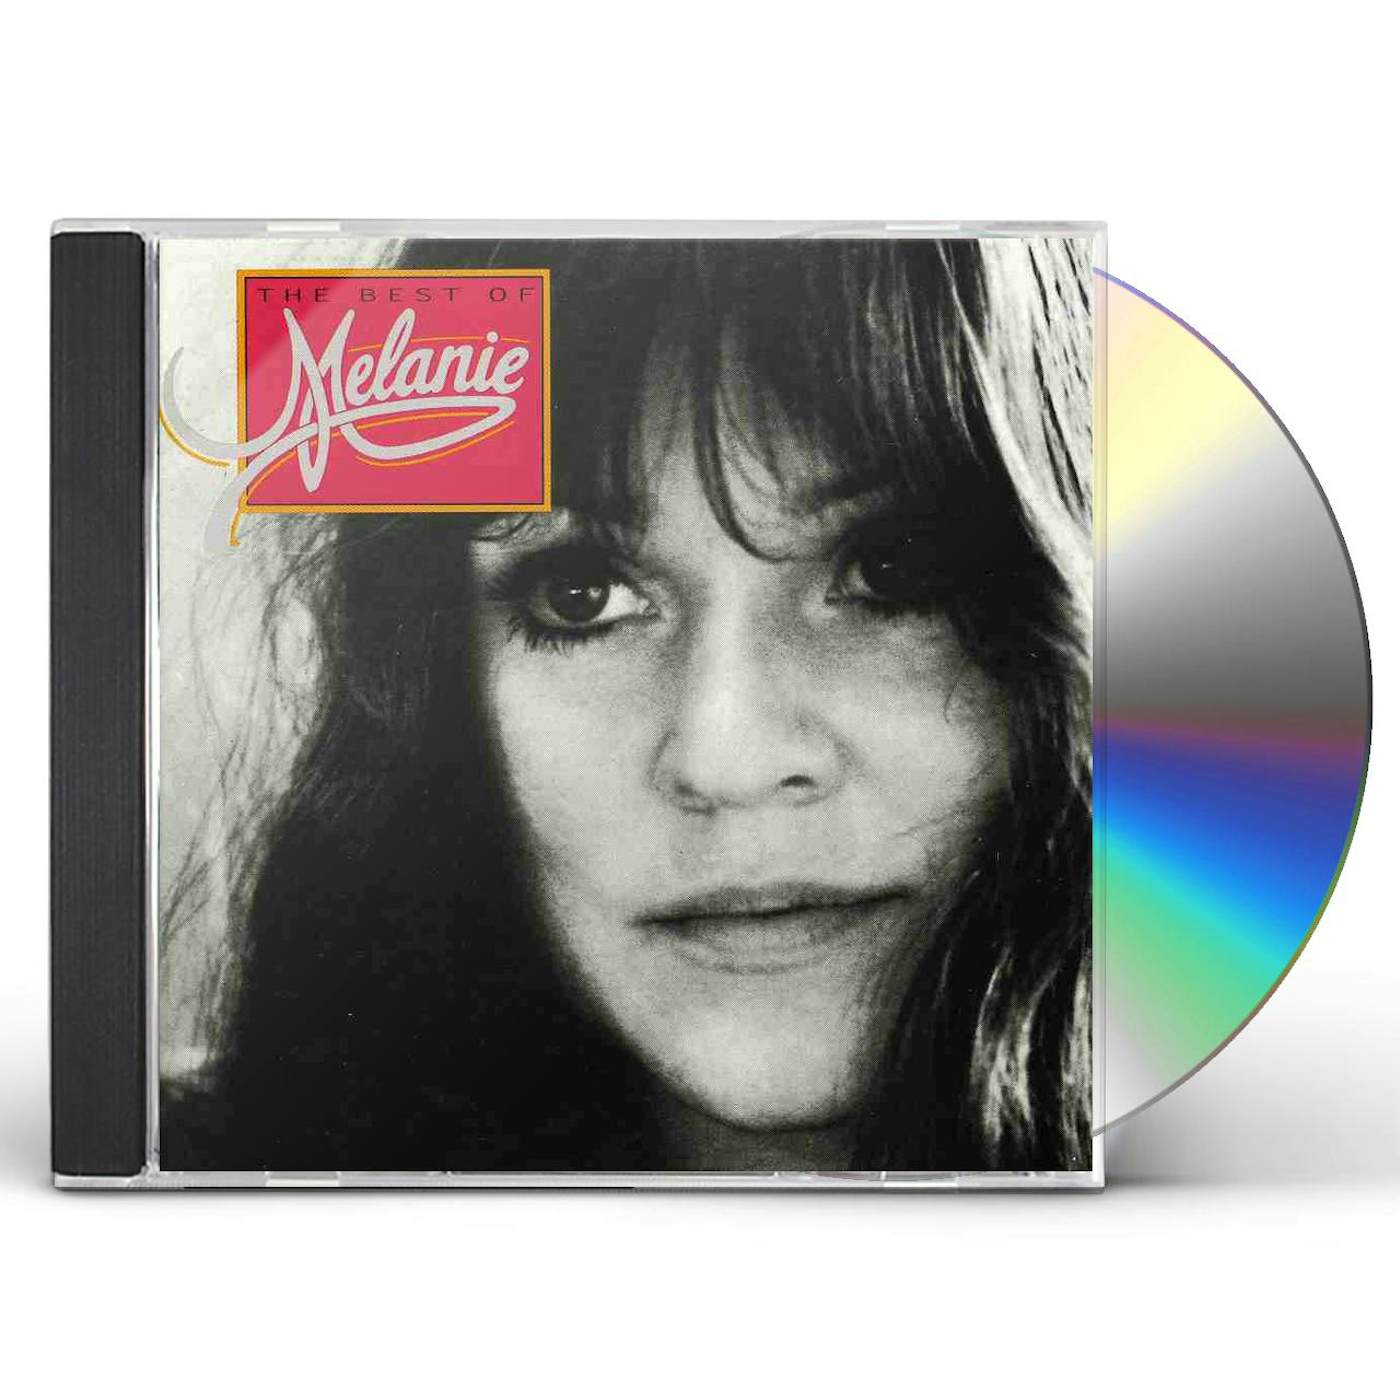 Melanie BEST OF CD